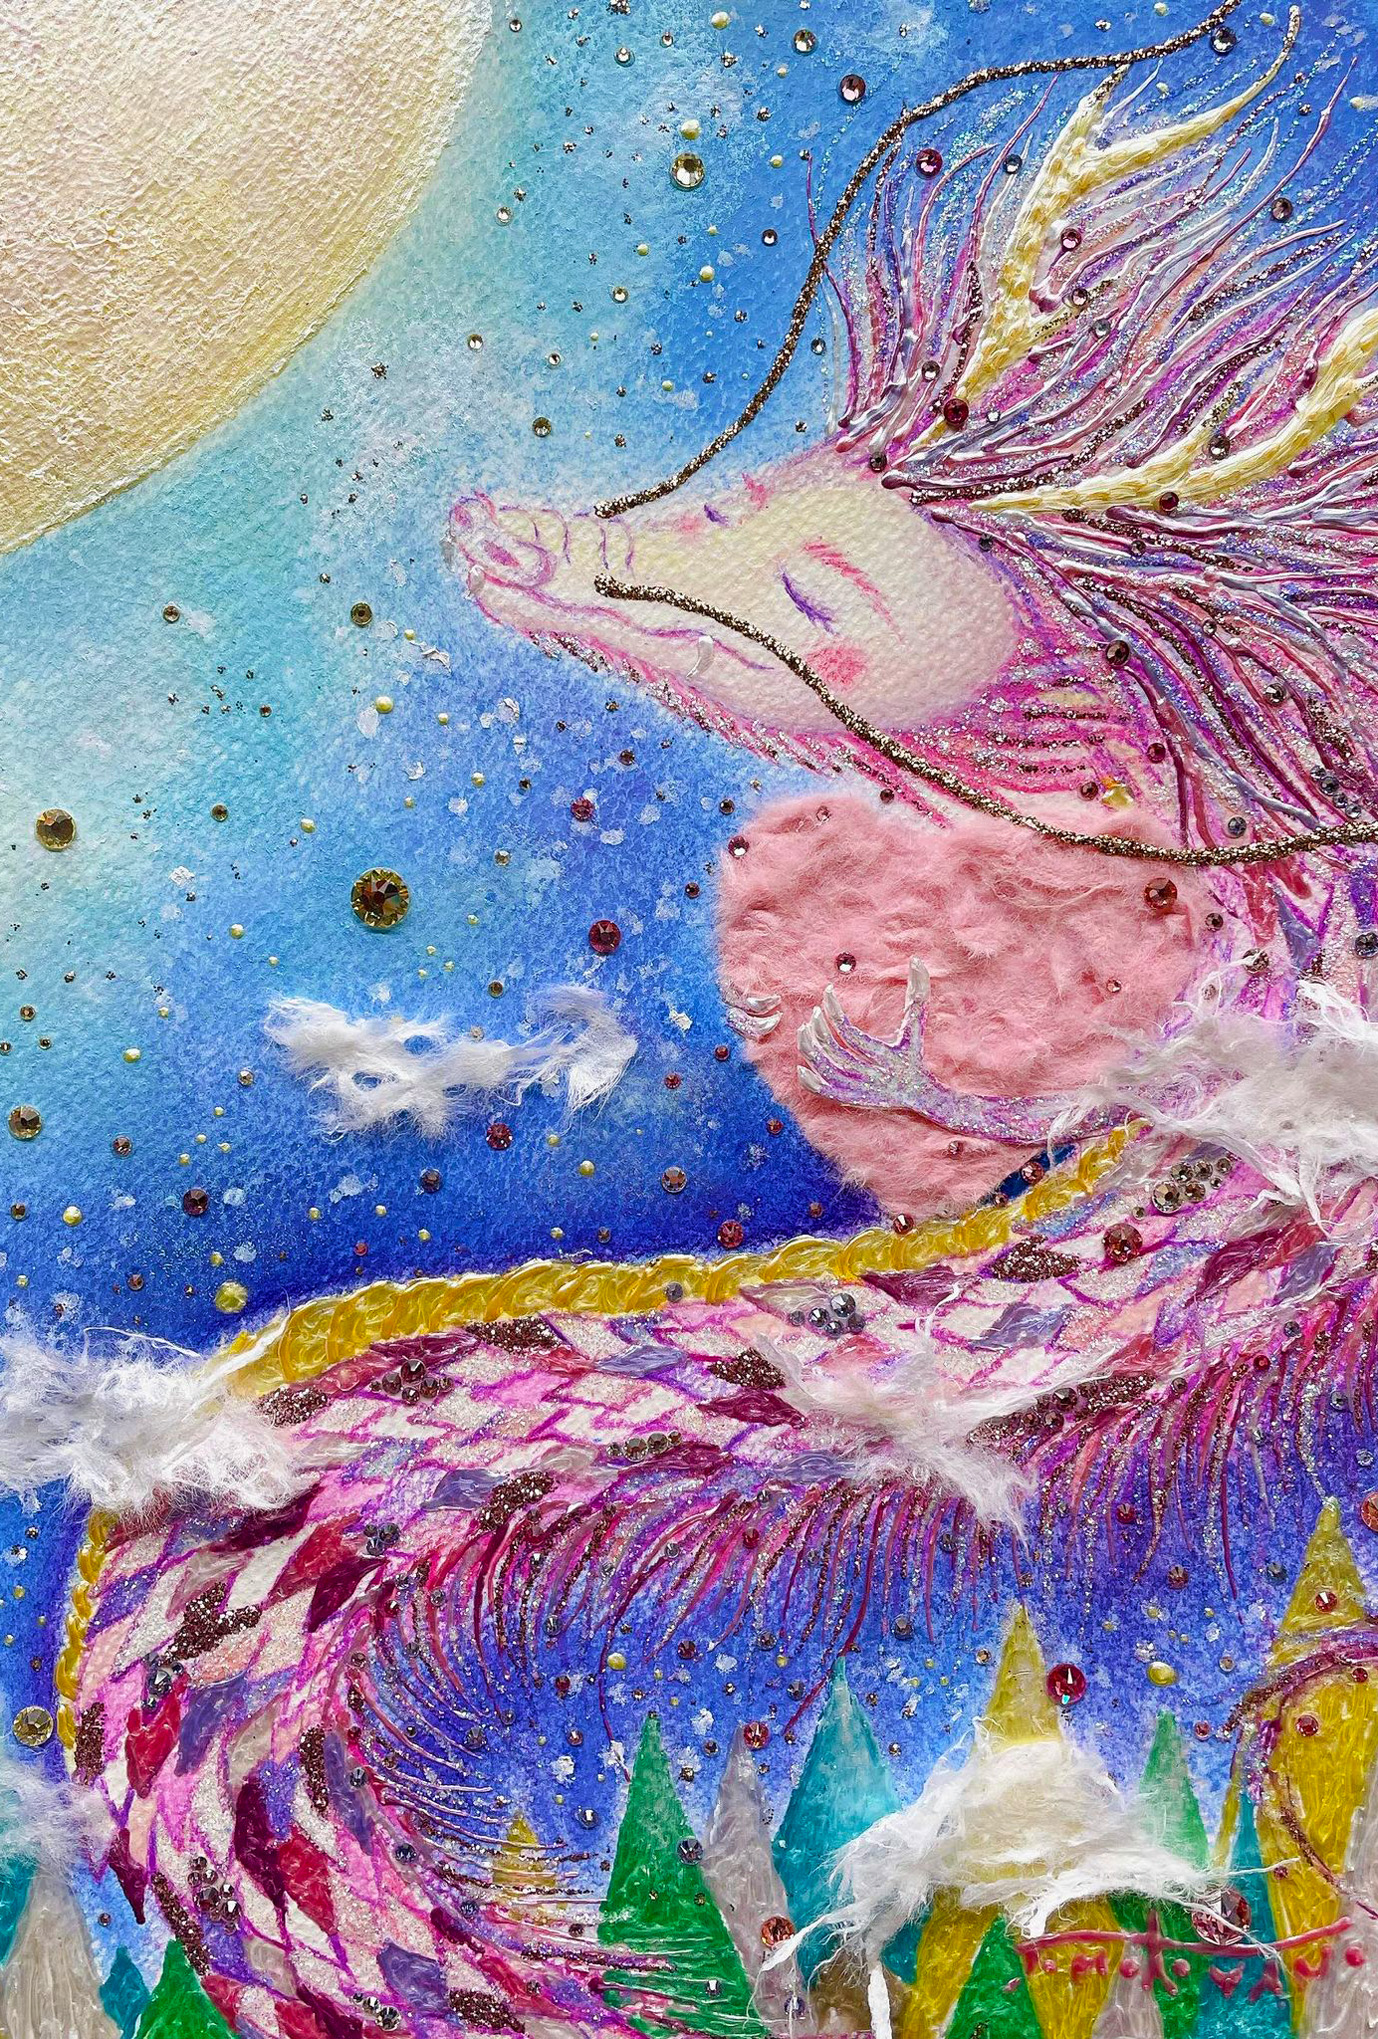 【オーダー龍🐉】お客様の龍を描きます。降りて来た龍は、優しく愛に溢れた龍でした。ホスピタルアート　龍の絵　癒しの絵　ヒーリングアート　Dragon 龍のイラスト　龍の絵画家　龍の絵かわいい　イラスト　ART パステル画　色鉛筆